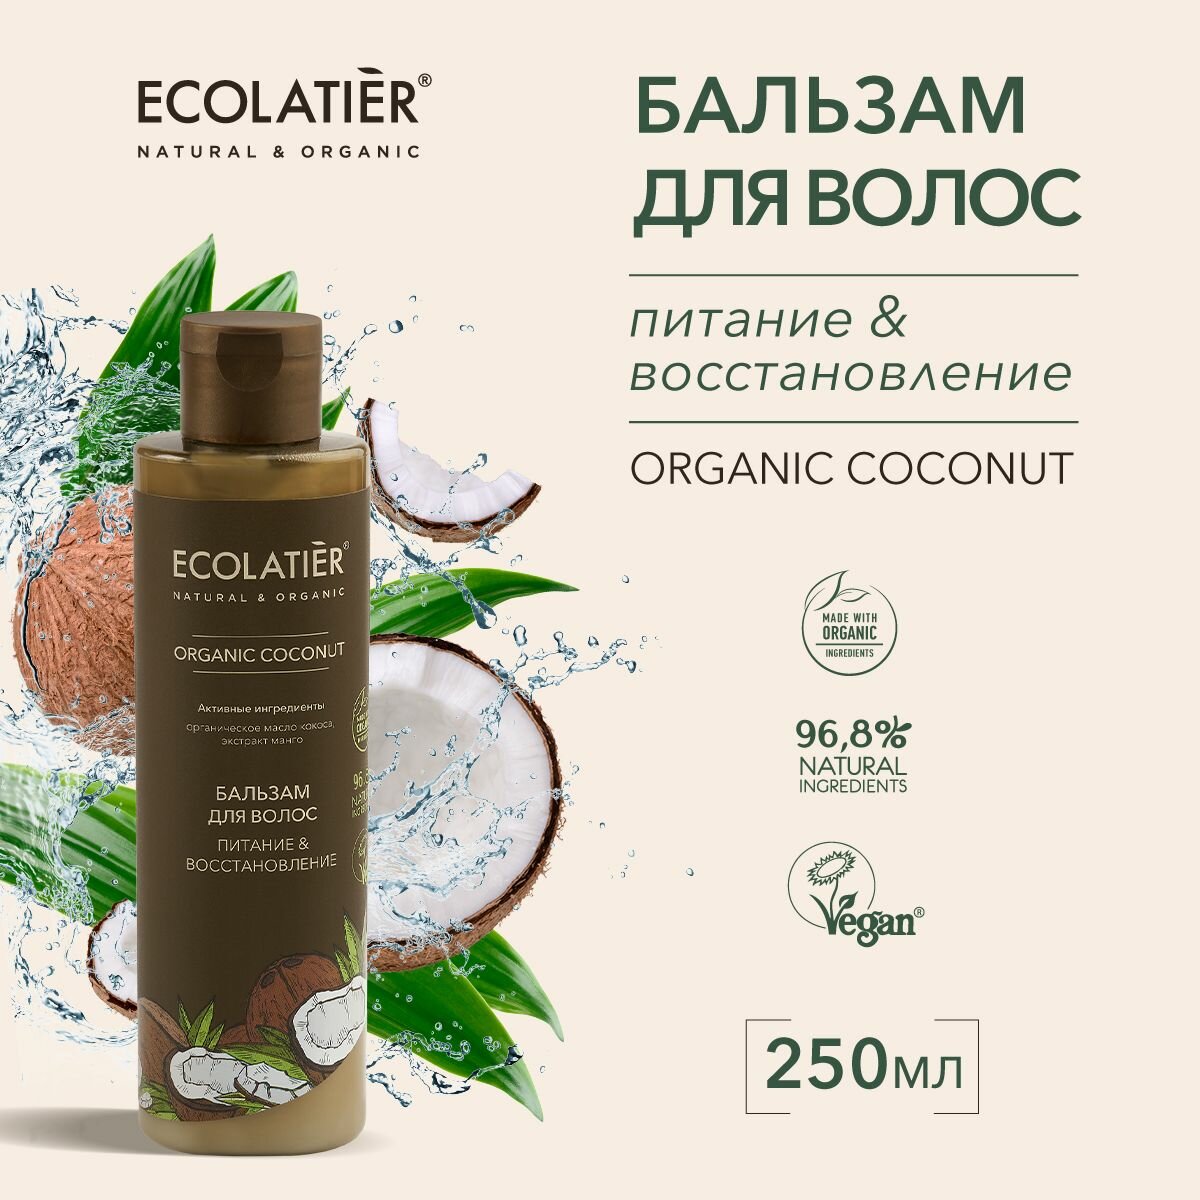 ECOLATIER / Бальзам для волос Питание & Восстановление Серия ORGANIC COCONUT, 250 мл